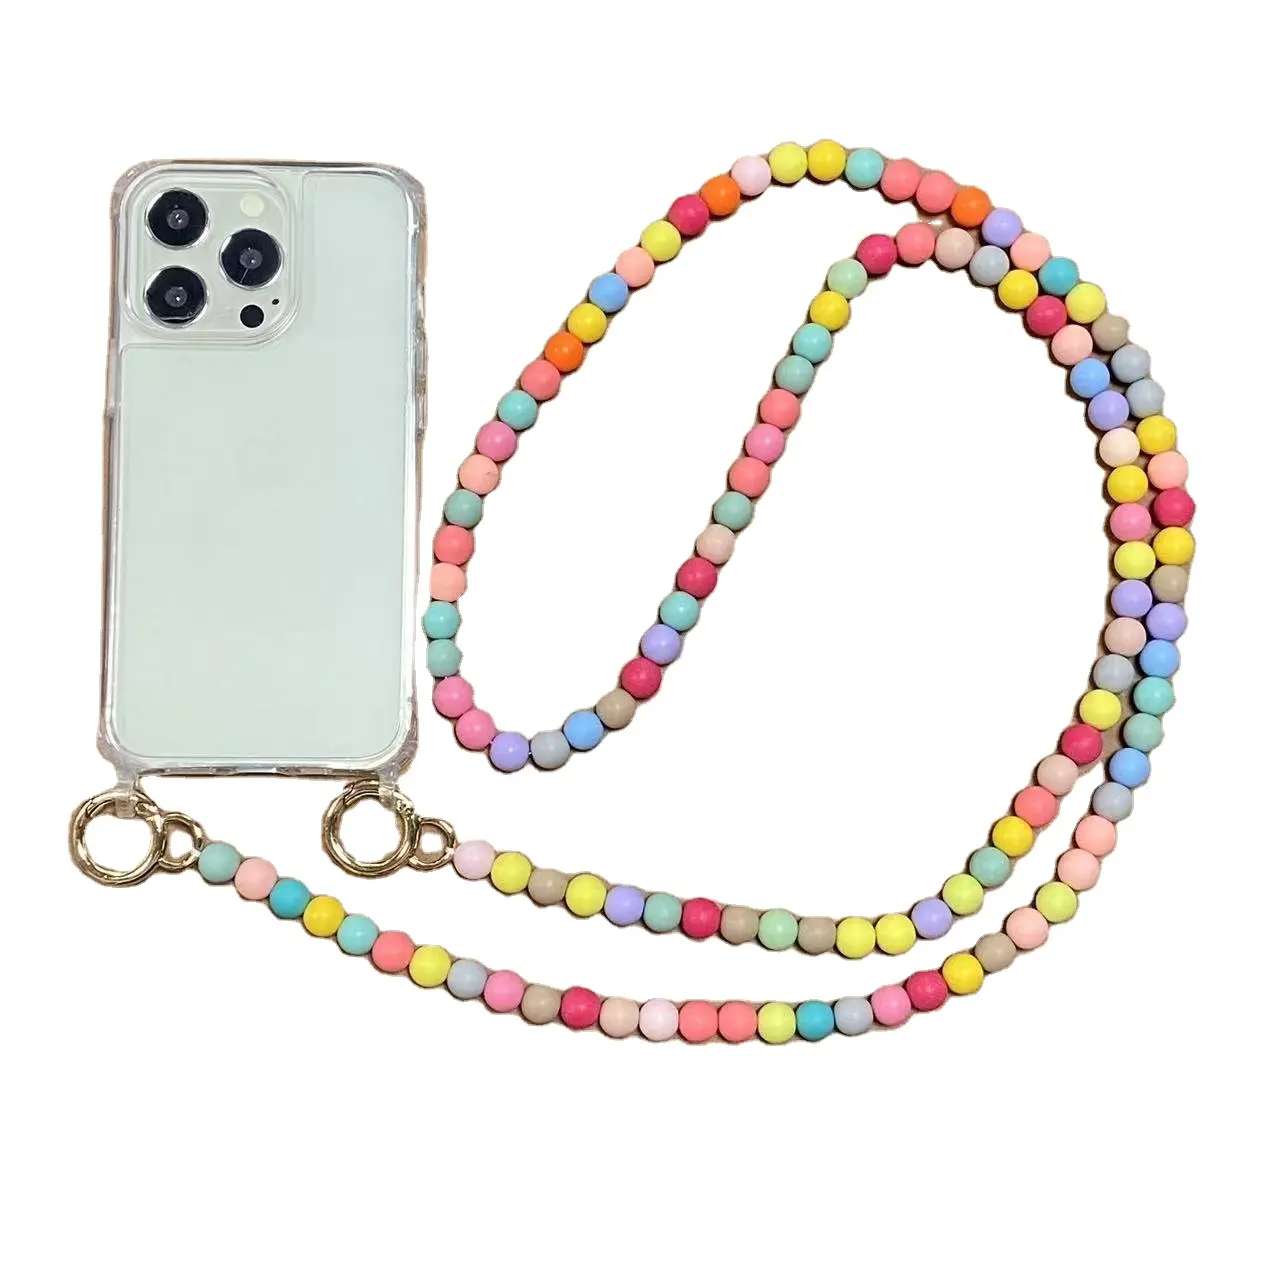 Couverture de téléphone transparente livraison gratuite couverture arrière téléphone portable perle perles chaîne sangle étui pour iPhone 11 13 14 Pro Max